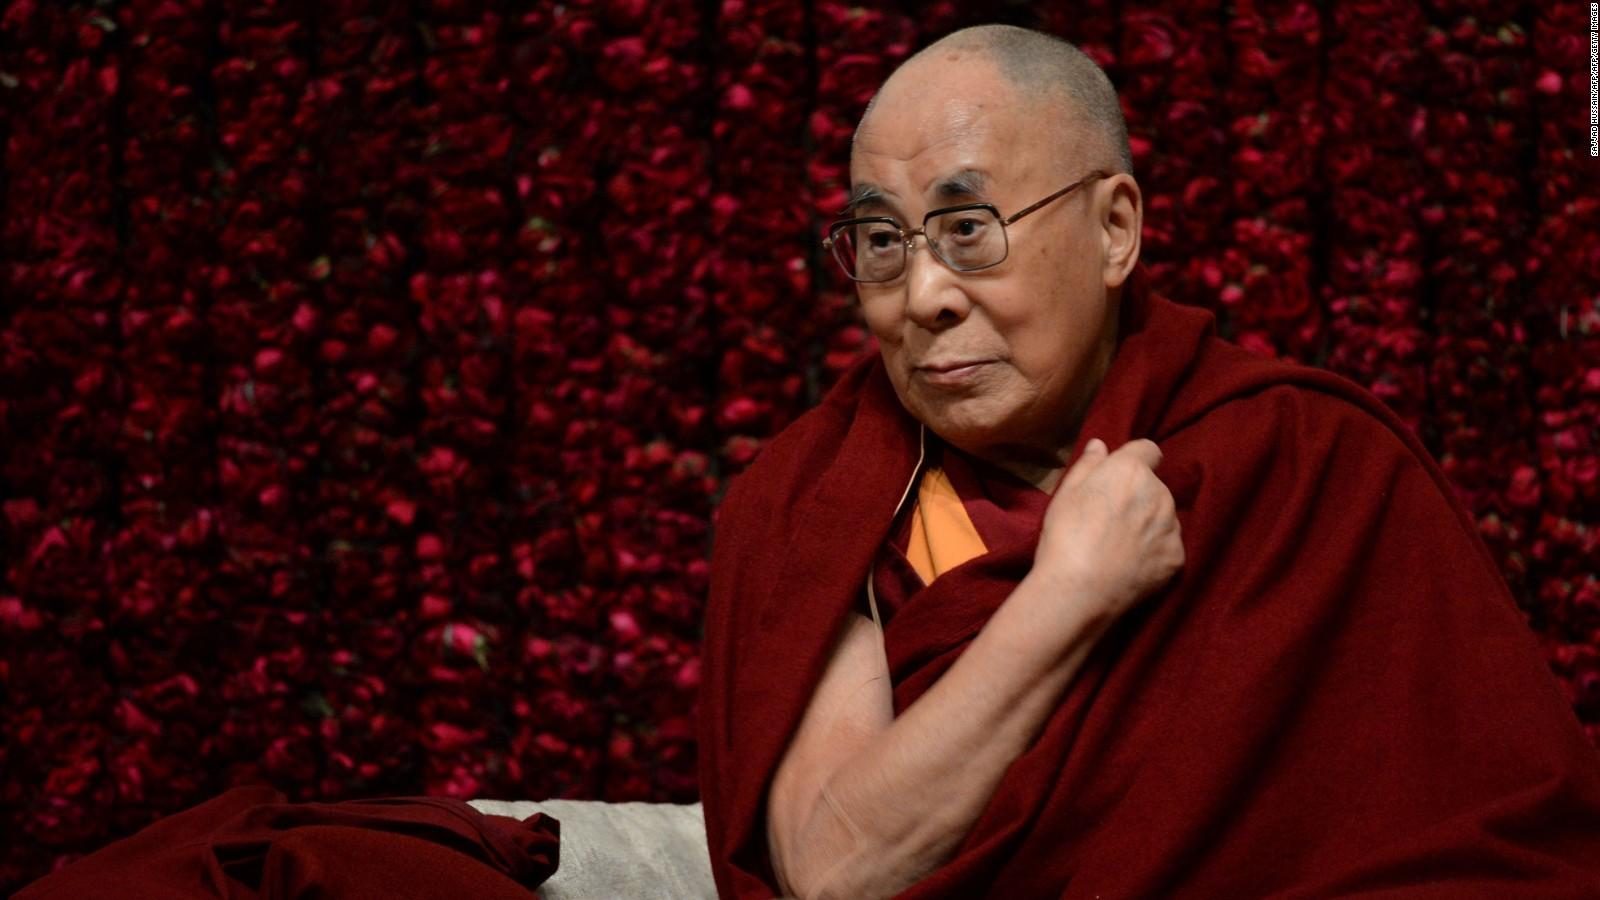 Playful humor The Dalai Lama’s secret weapon